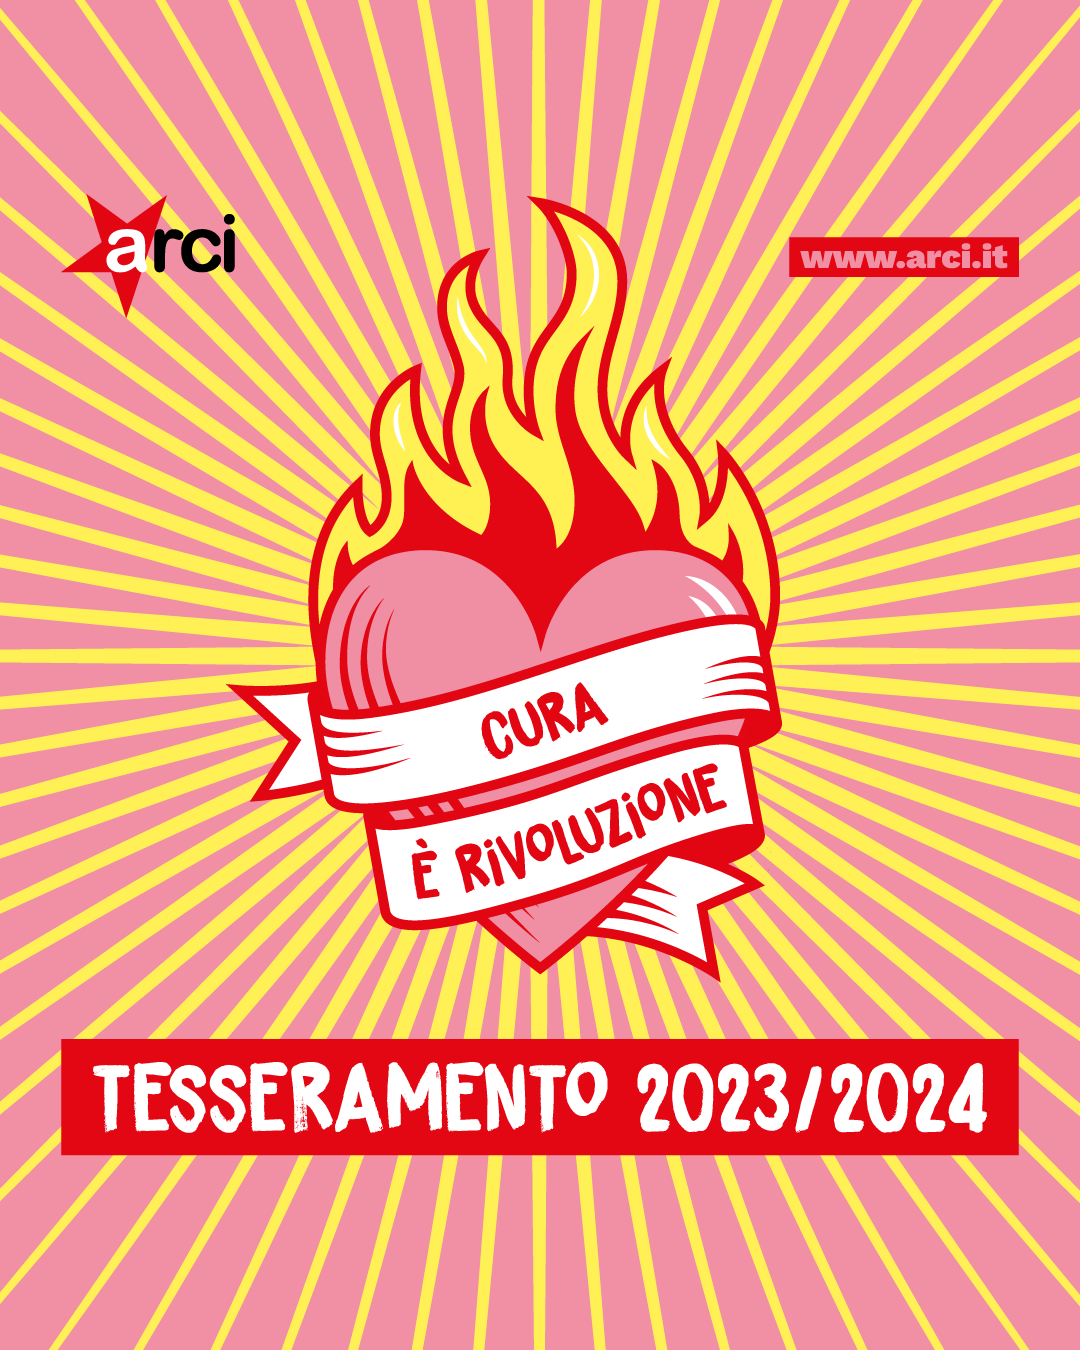 È arrivato il TESSERAMENTO ALIAS: una delle grandi novità per la campagna "Cura è rivoluzione" 2023-2024